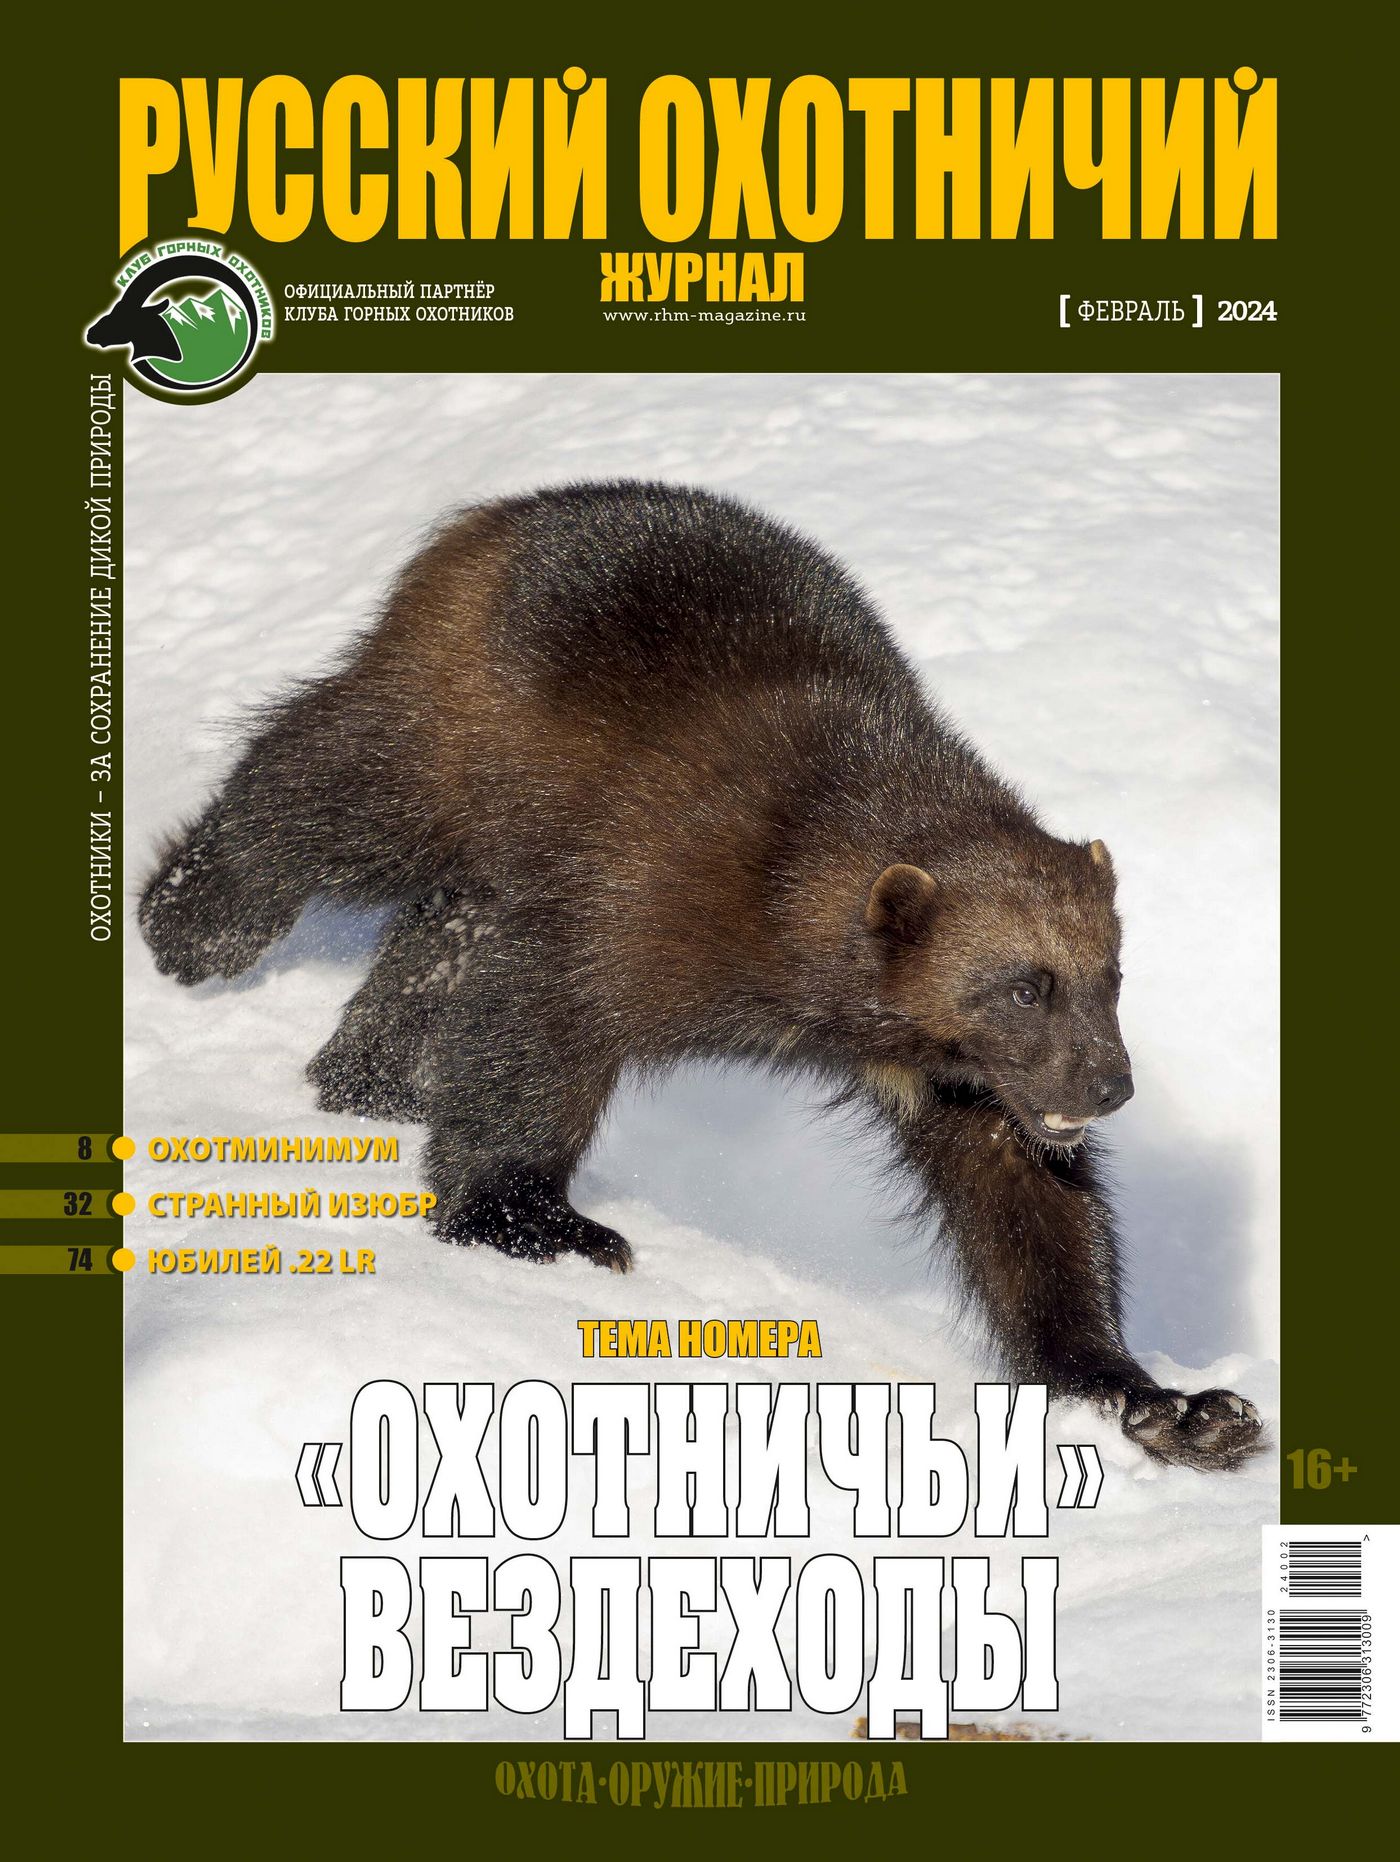 «Охотничьи вездеходы». «Русский охотничий журнал», №2 февраль 2024